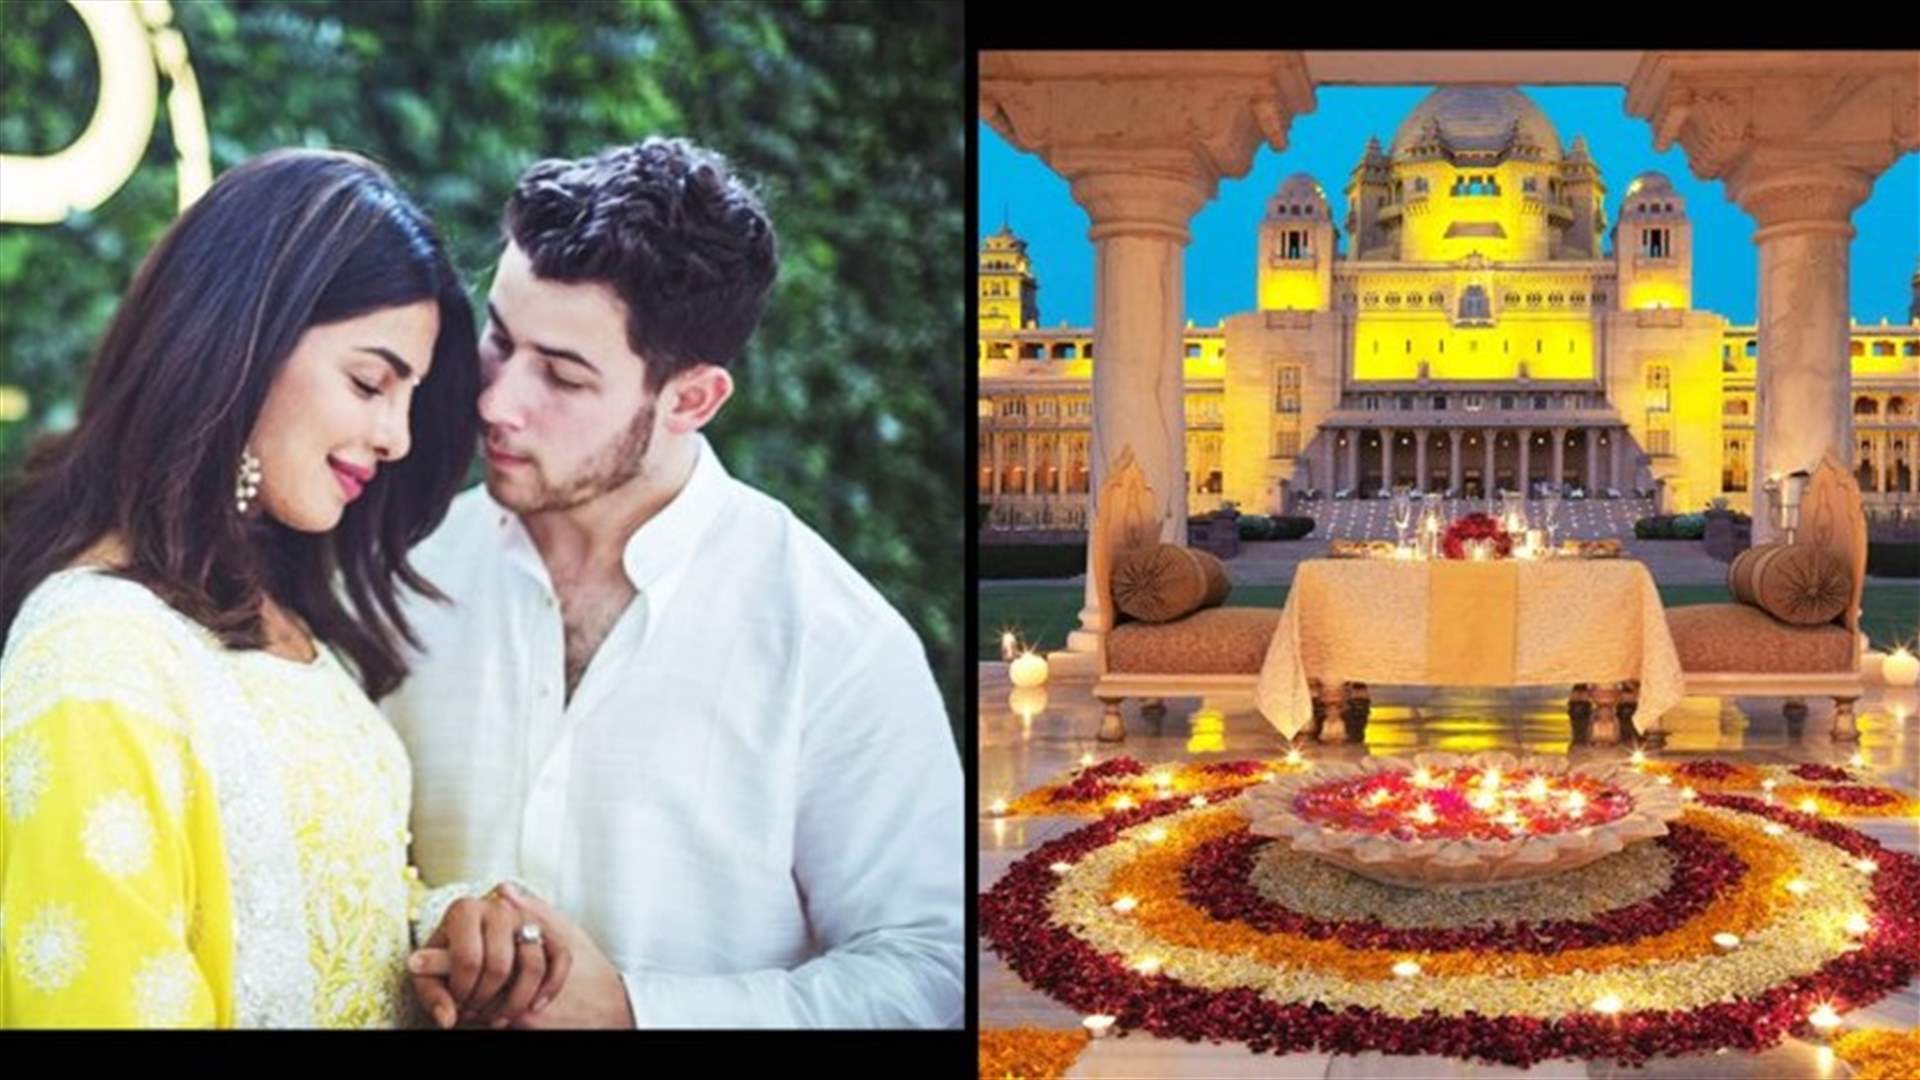 زفاف بريانكا شوبرا ونيك جوناس في أفخم فنادق الهند... إليكم التفاصيل